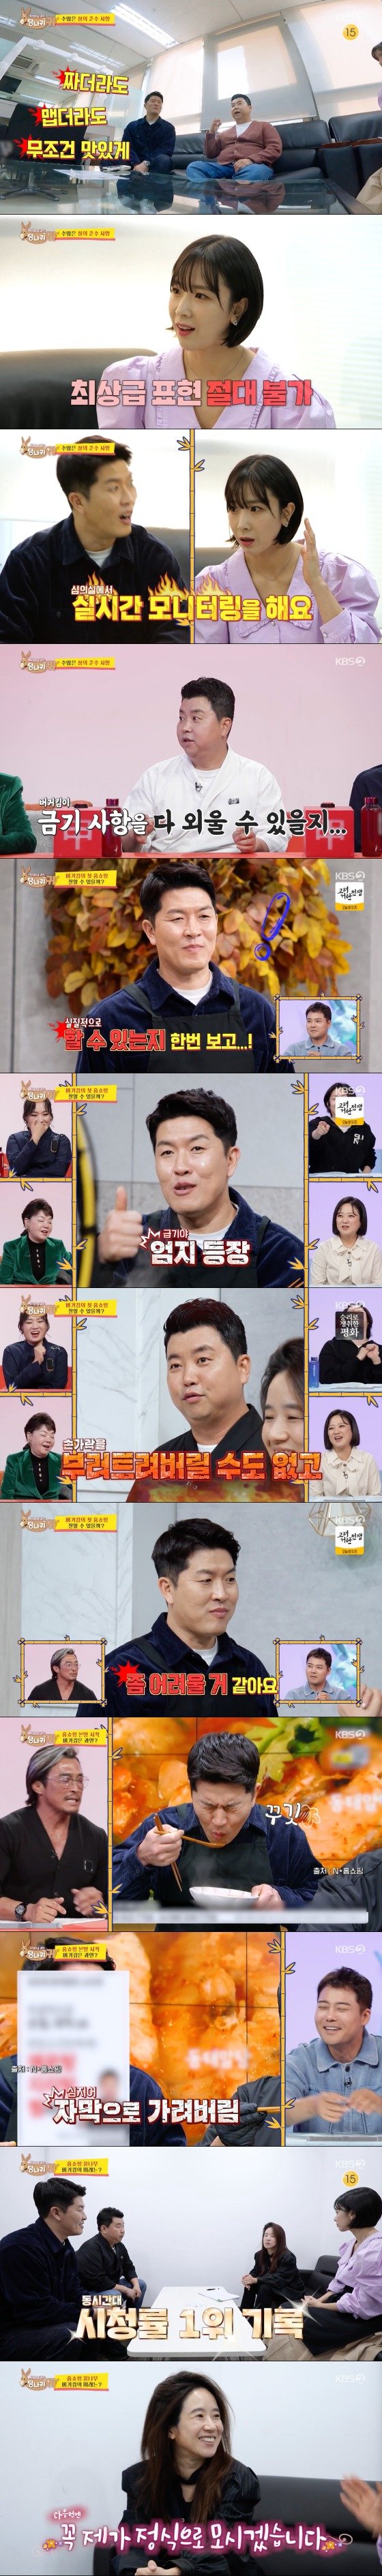 '버거킴' 김병현, 첫 홈쇼핑부터 금기사항 남발…정호영 분노 [RE:TV]